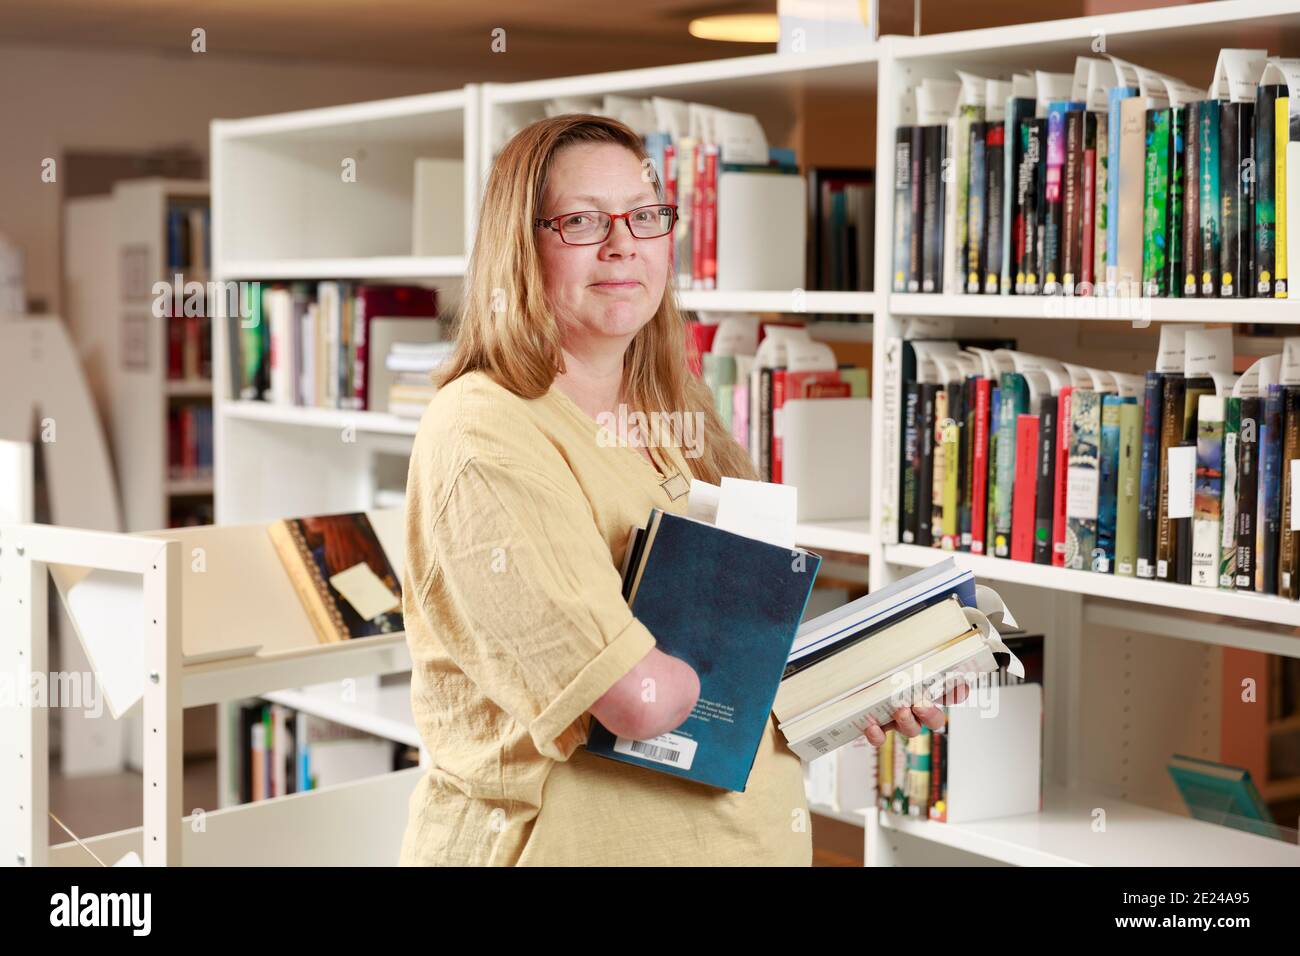 Bibliothekar, der Bücher im Regal platziert Stockfoto